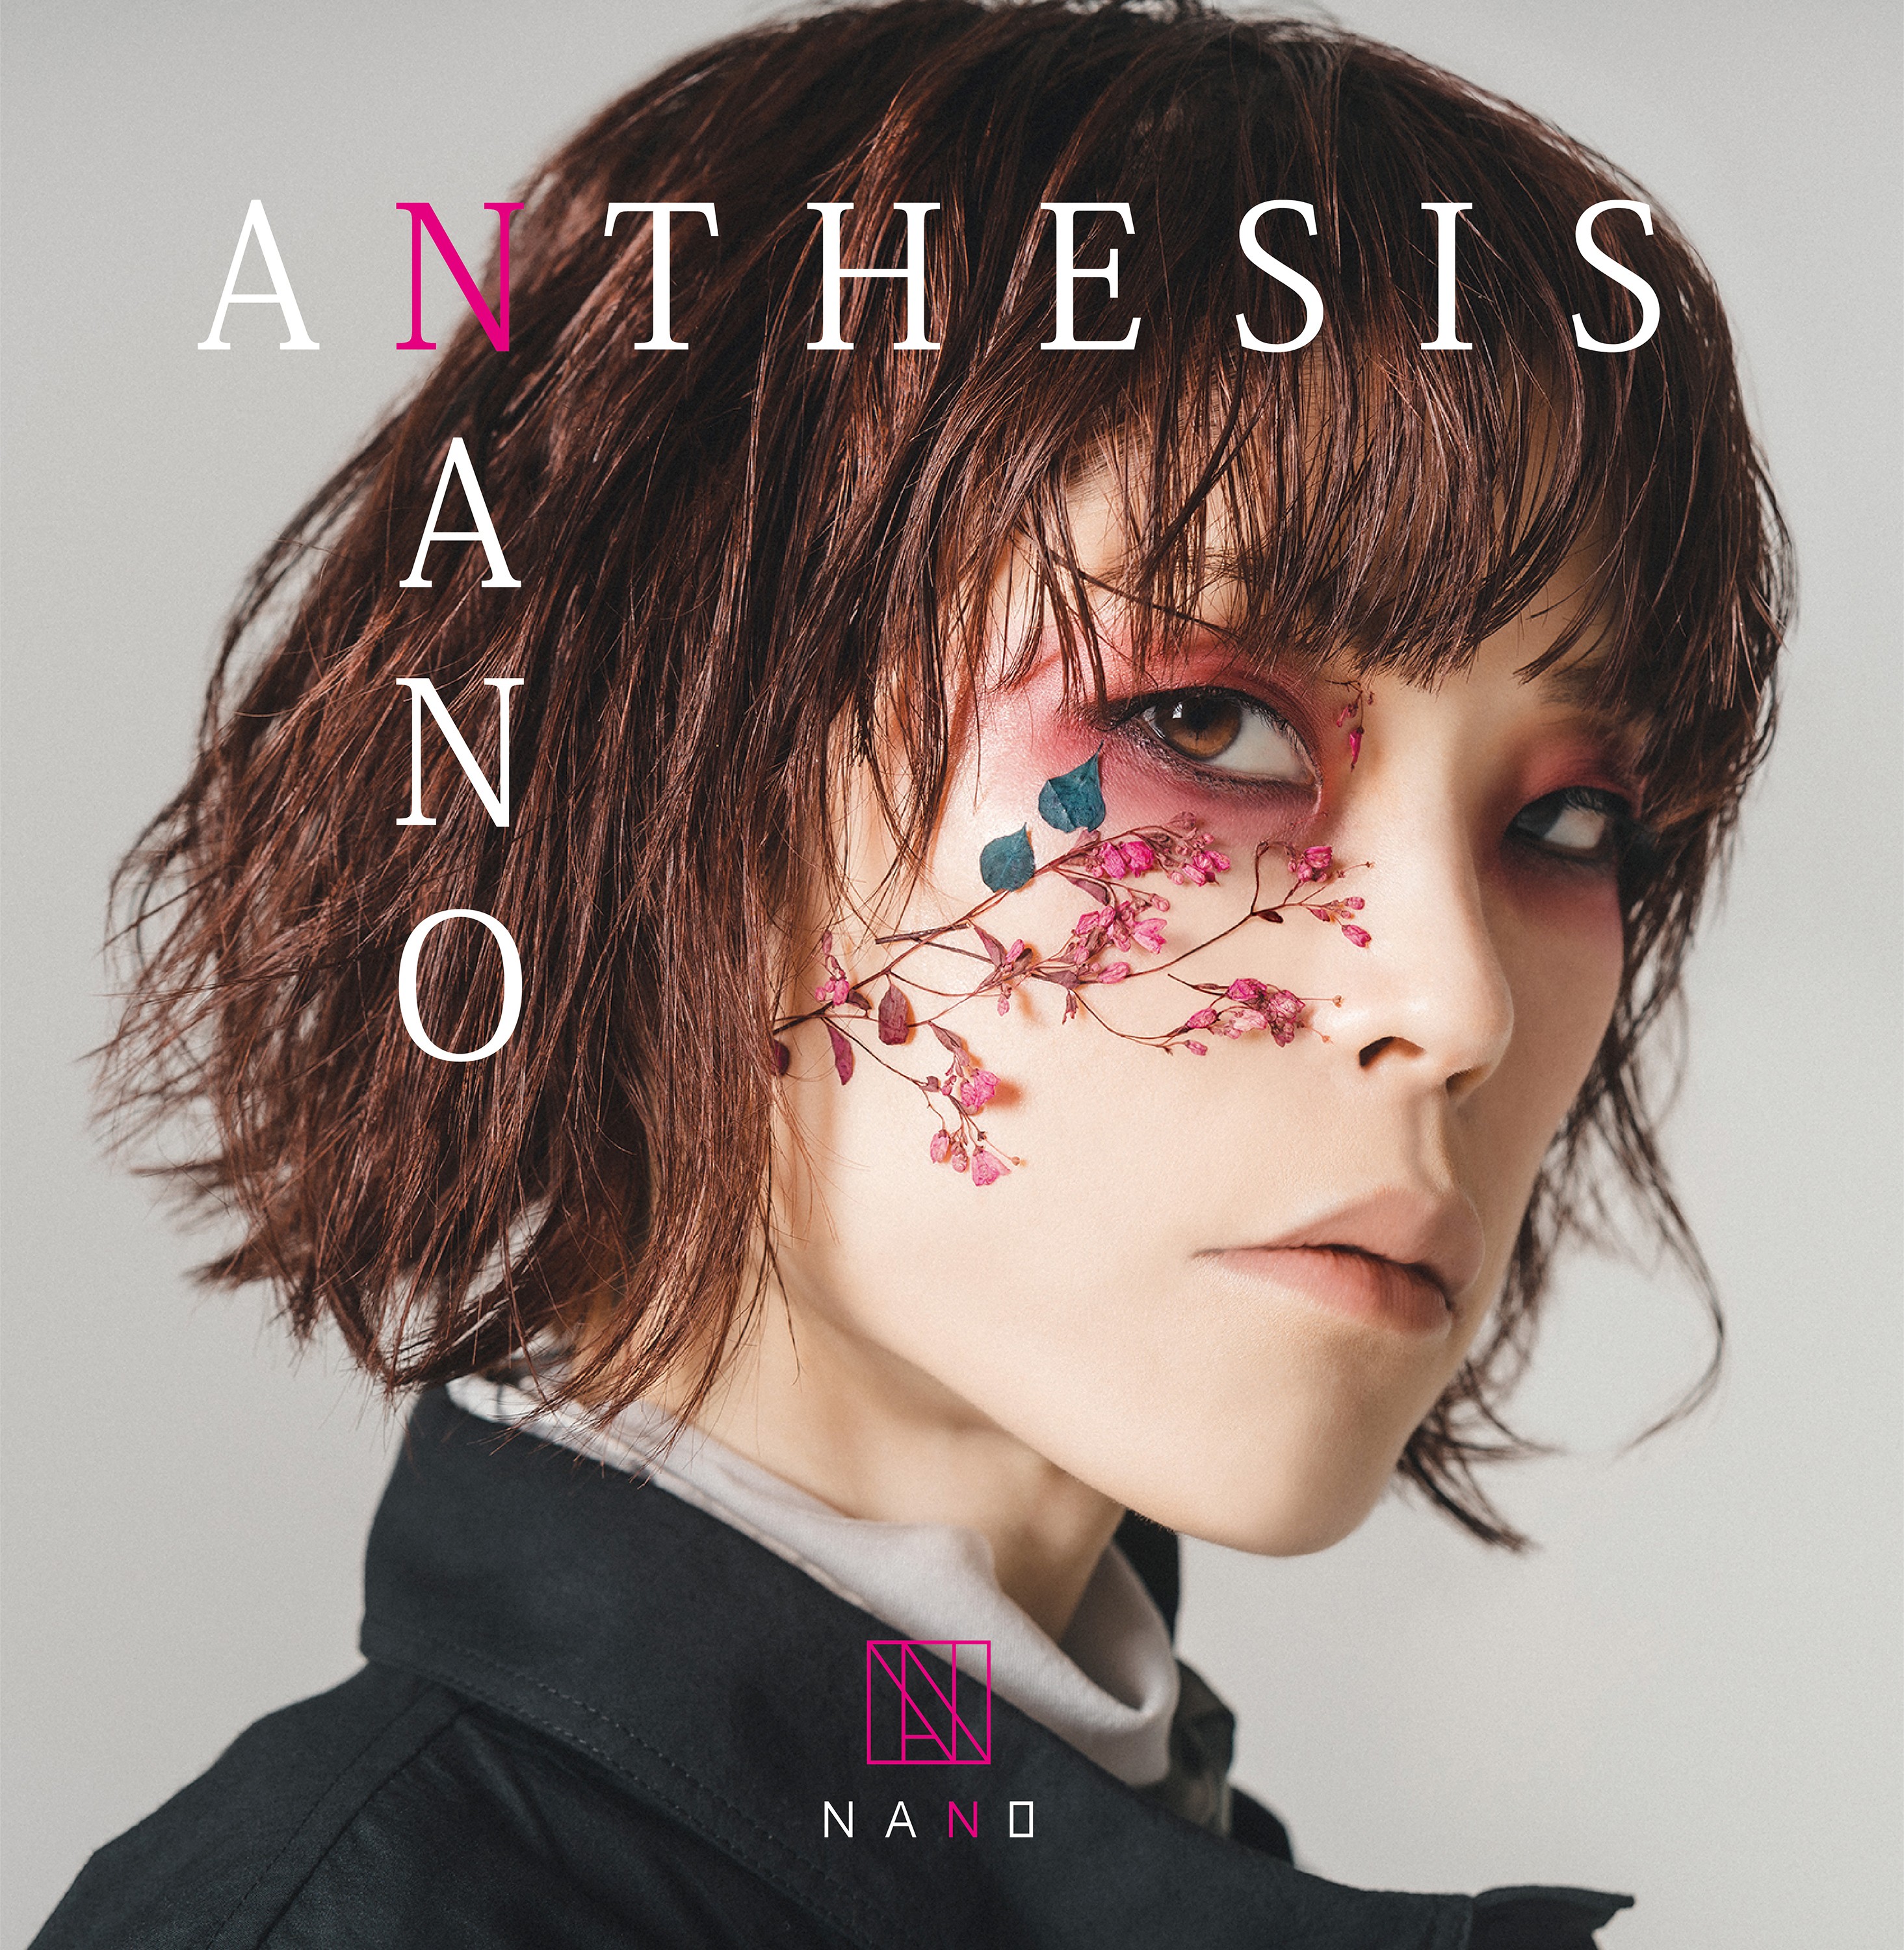 nano (ナノ) – ANTHESIS (2021-04-14) [FLAC 24bit/44,1kHz]